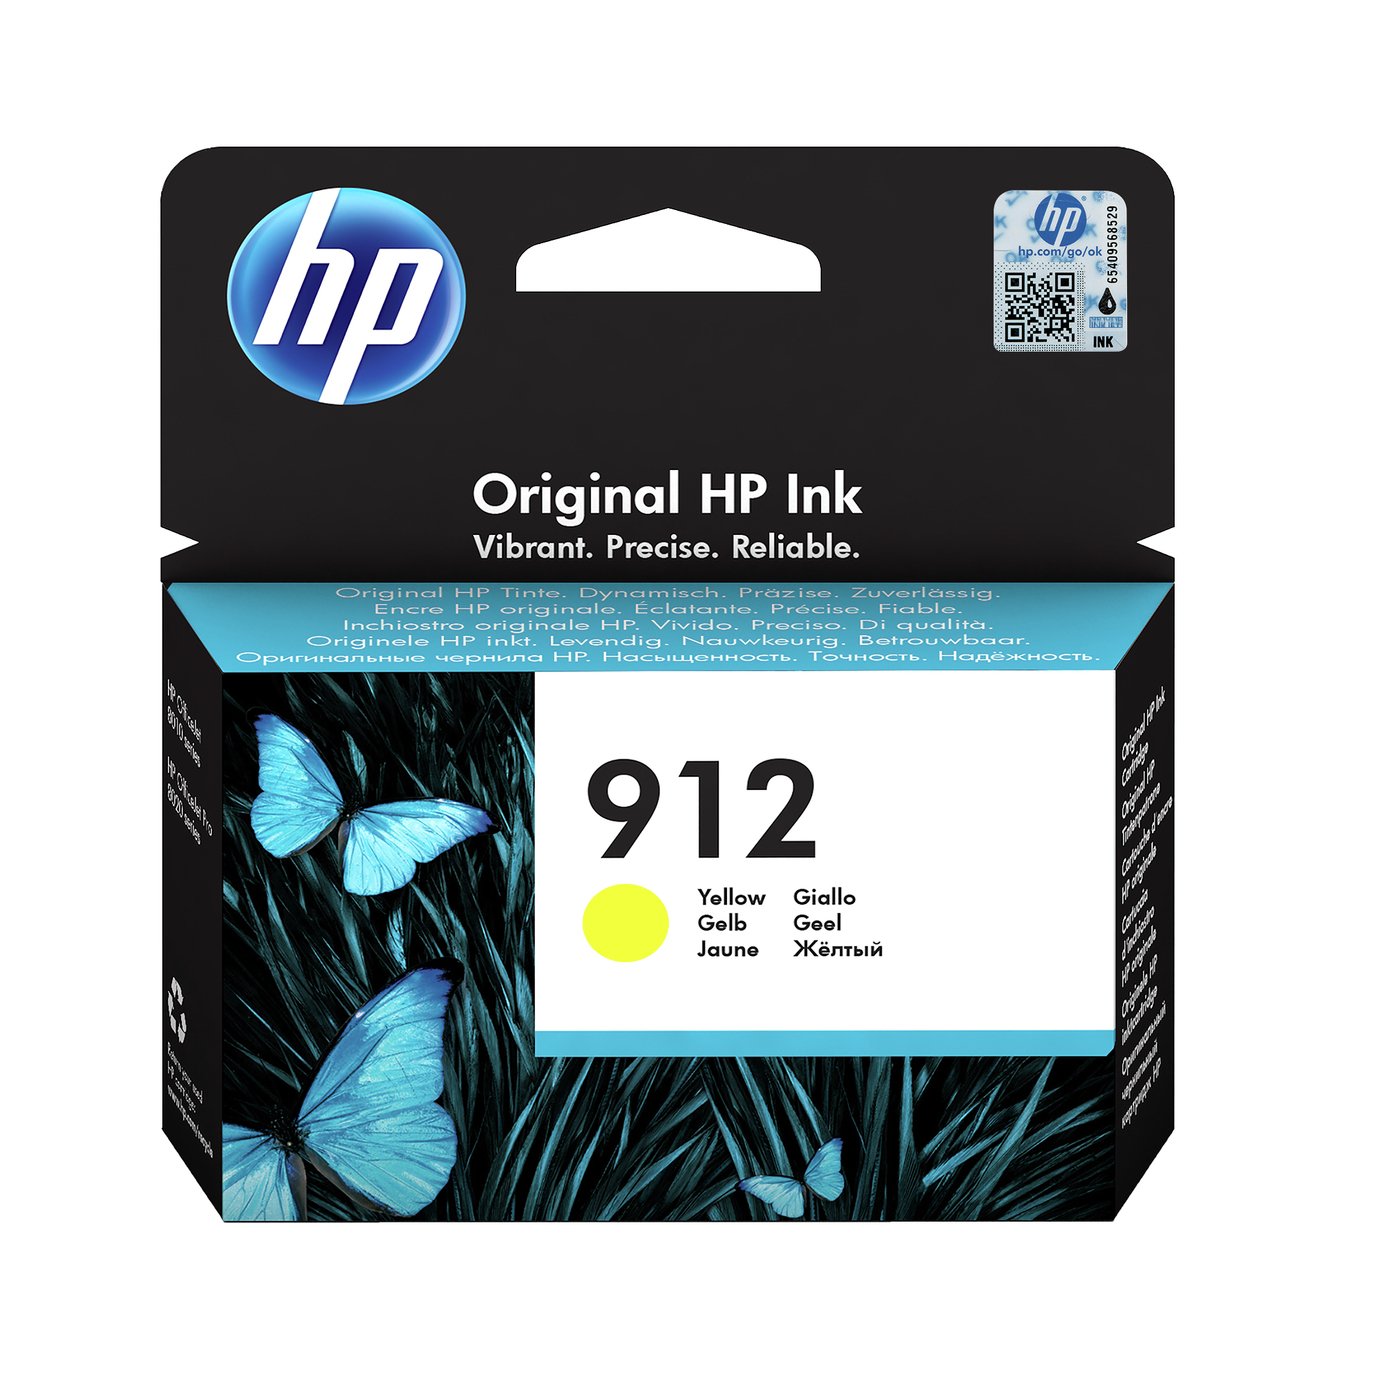 HP 912 Original Ink Cartridge - Yellow